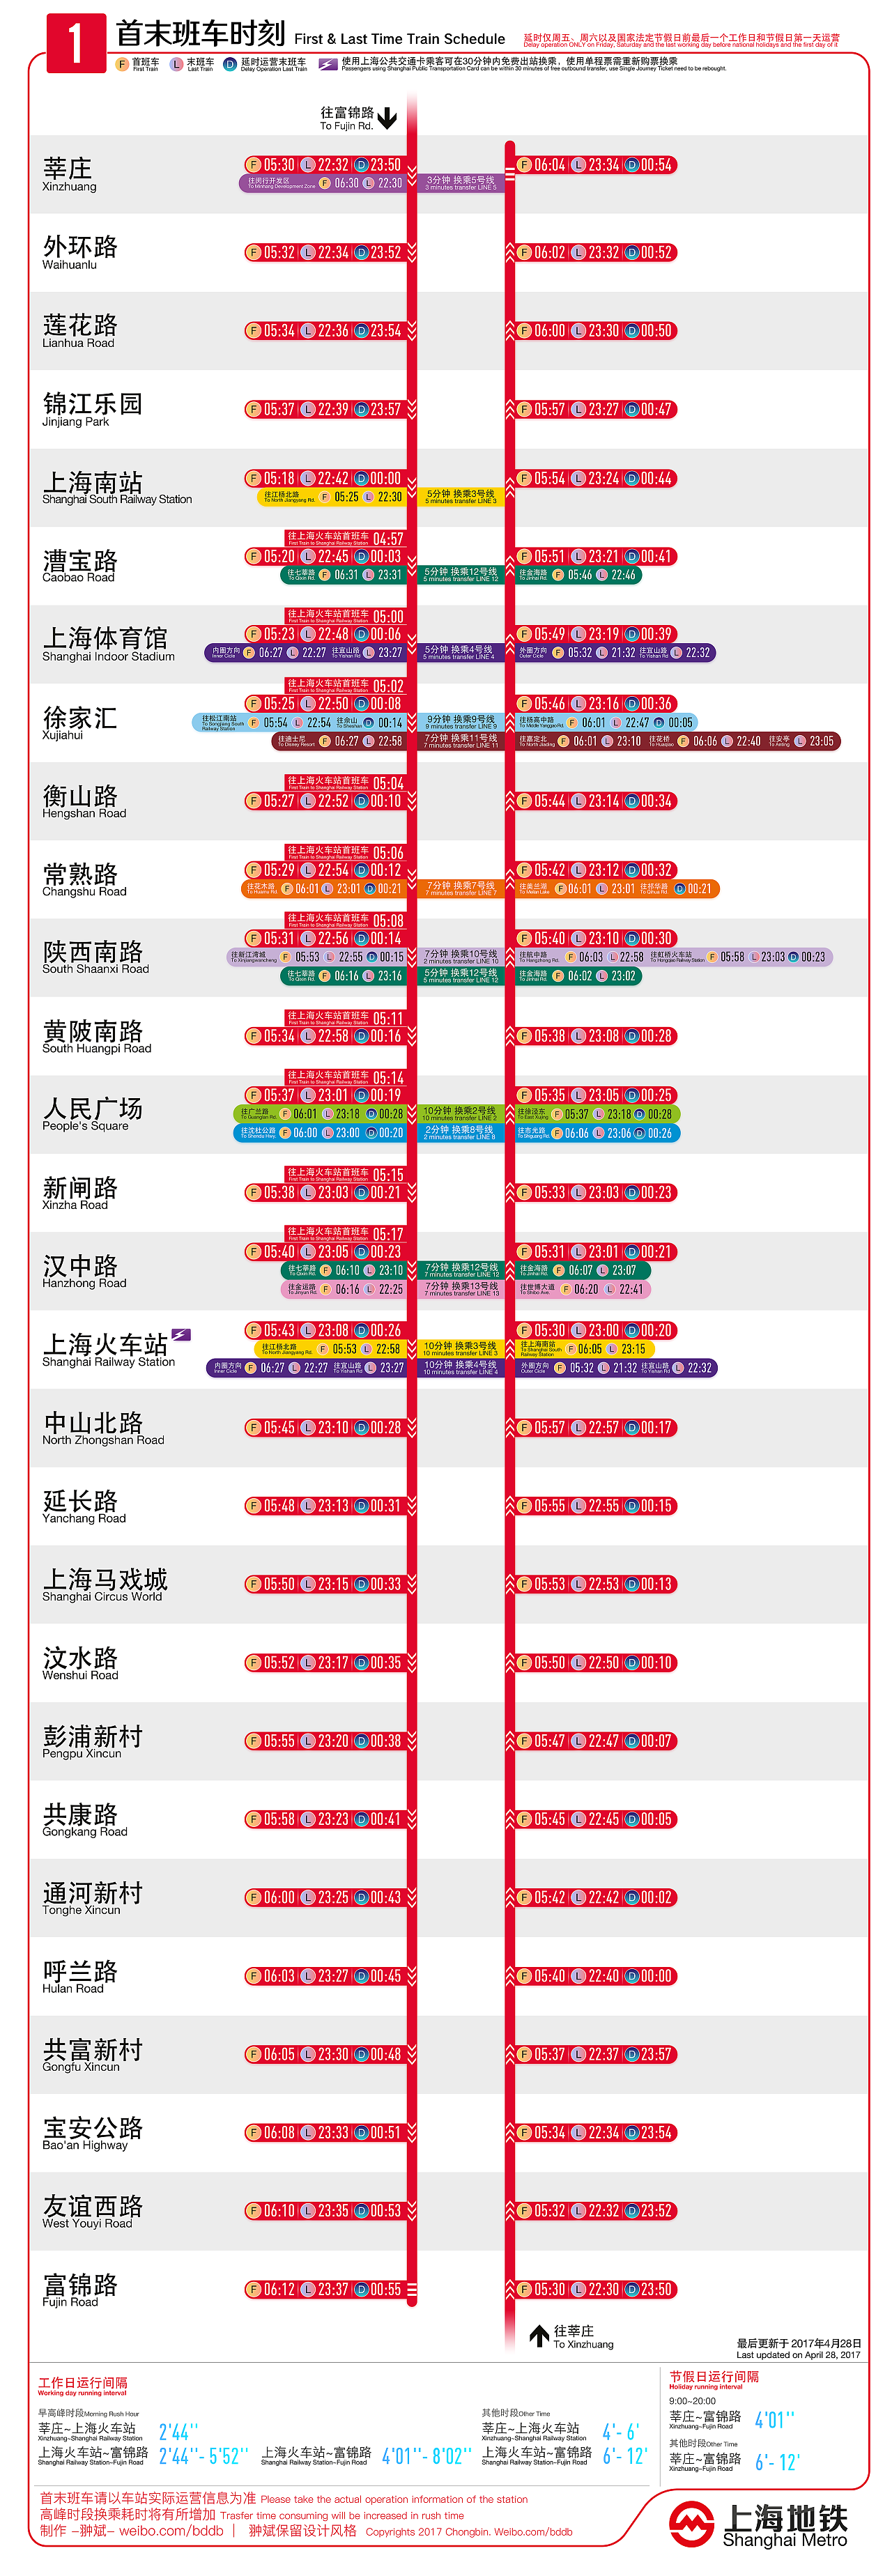 上海地铁1号线首末班车时刻表|平面|信息图表|